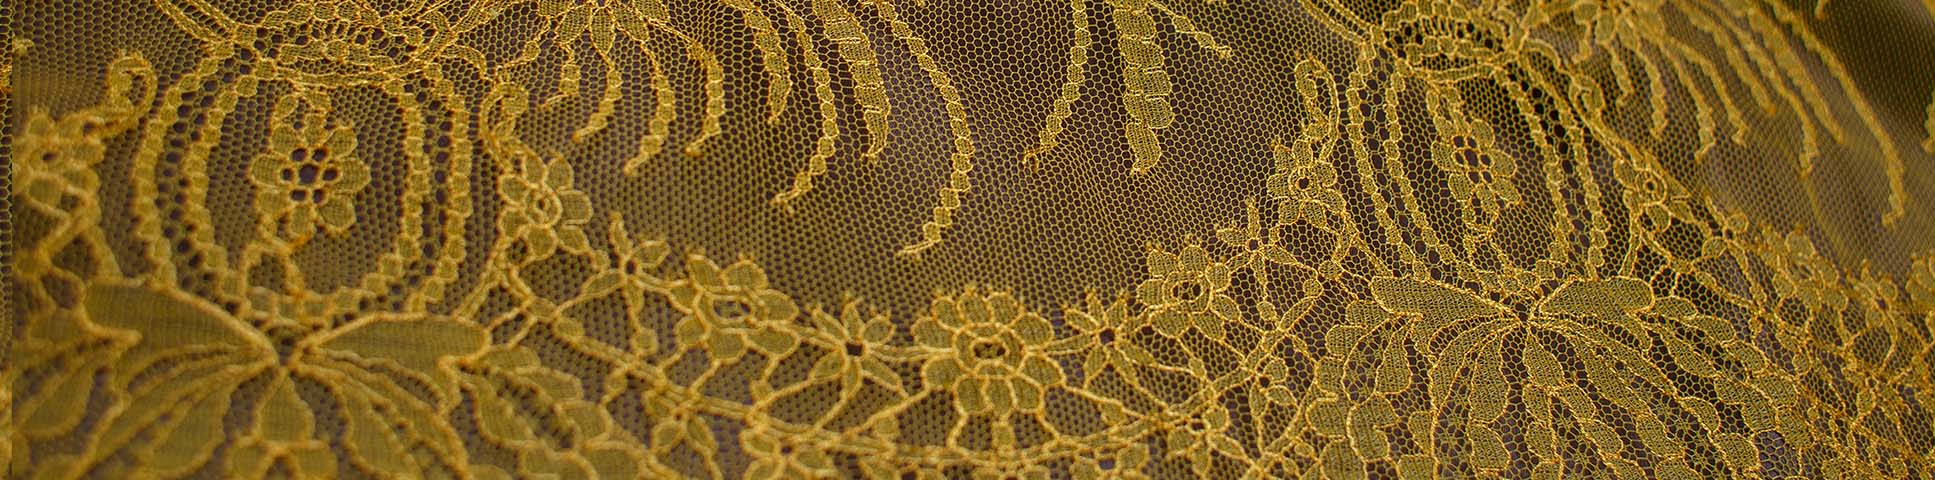 yellow lace